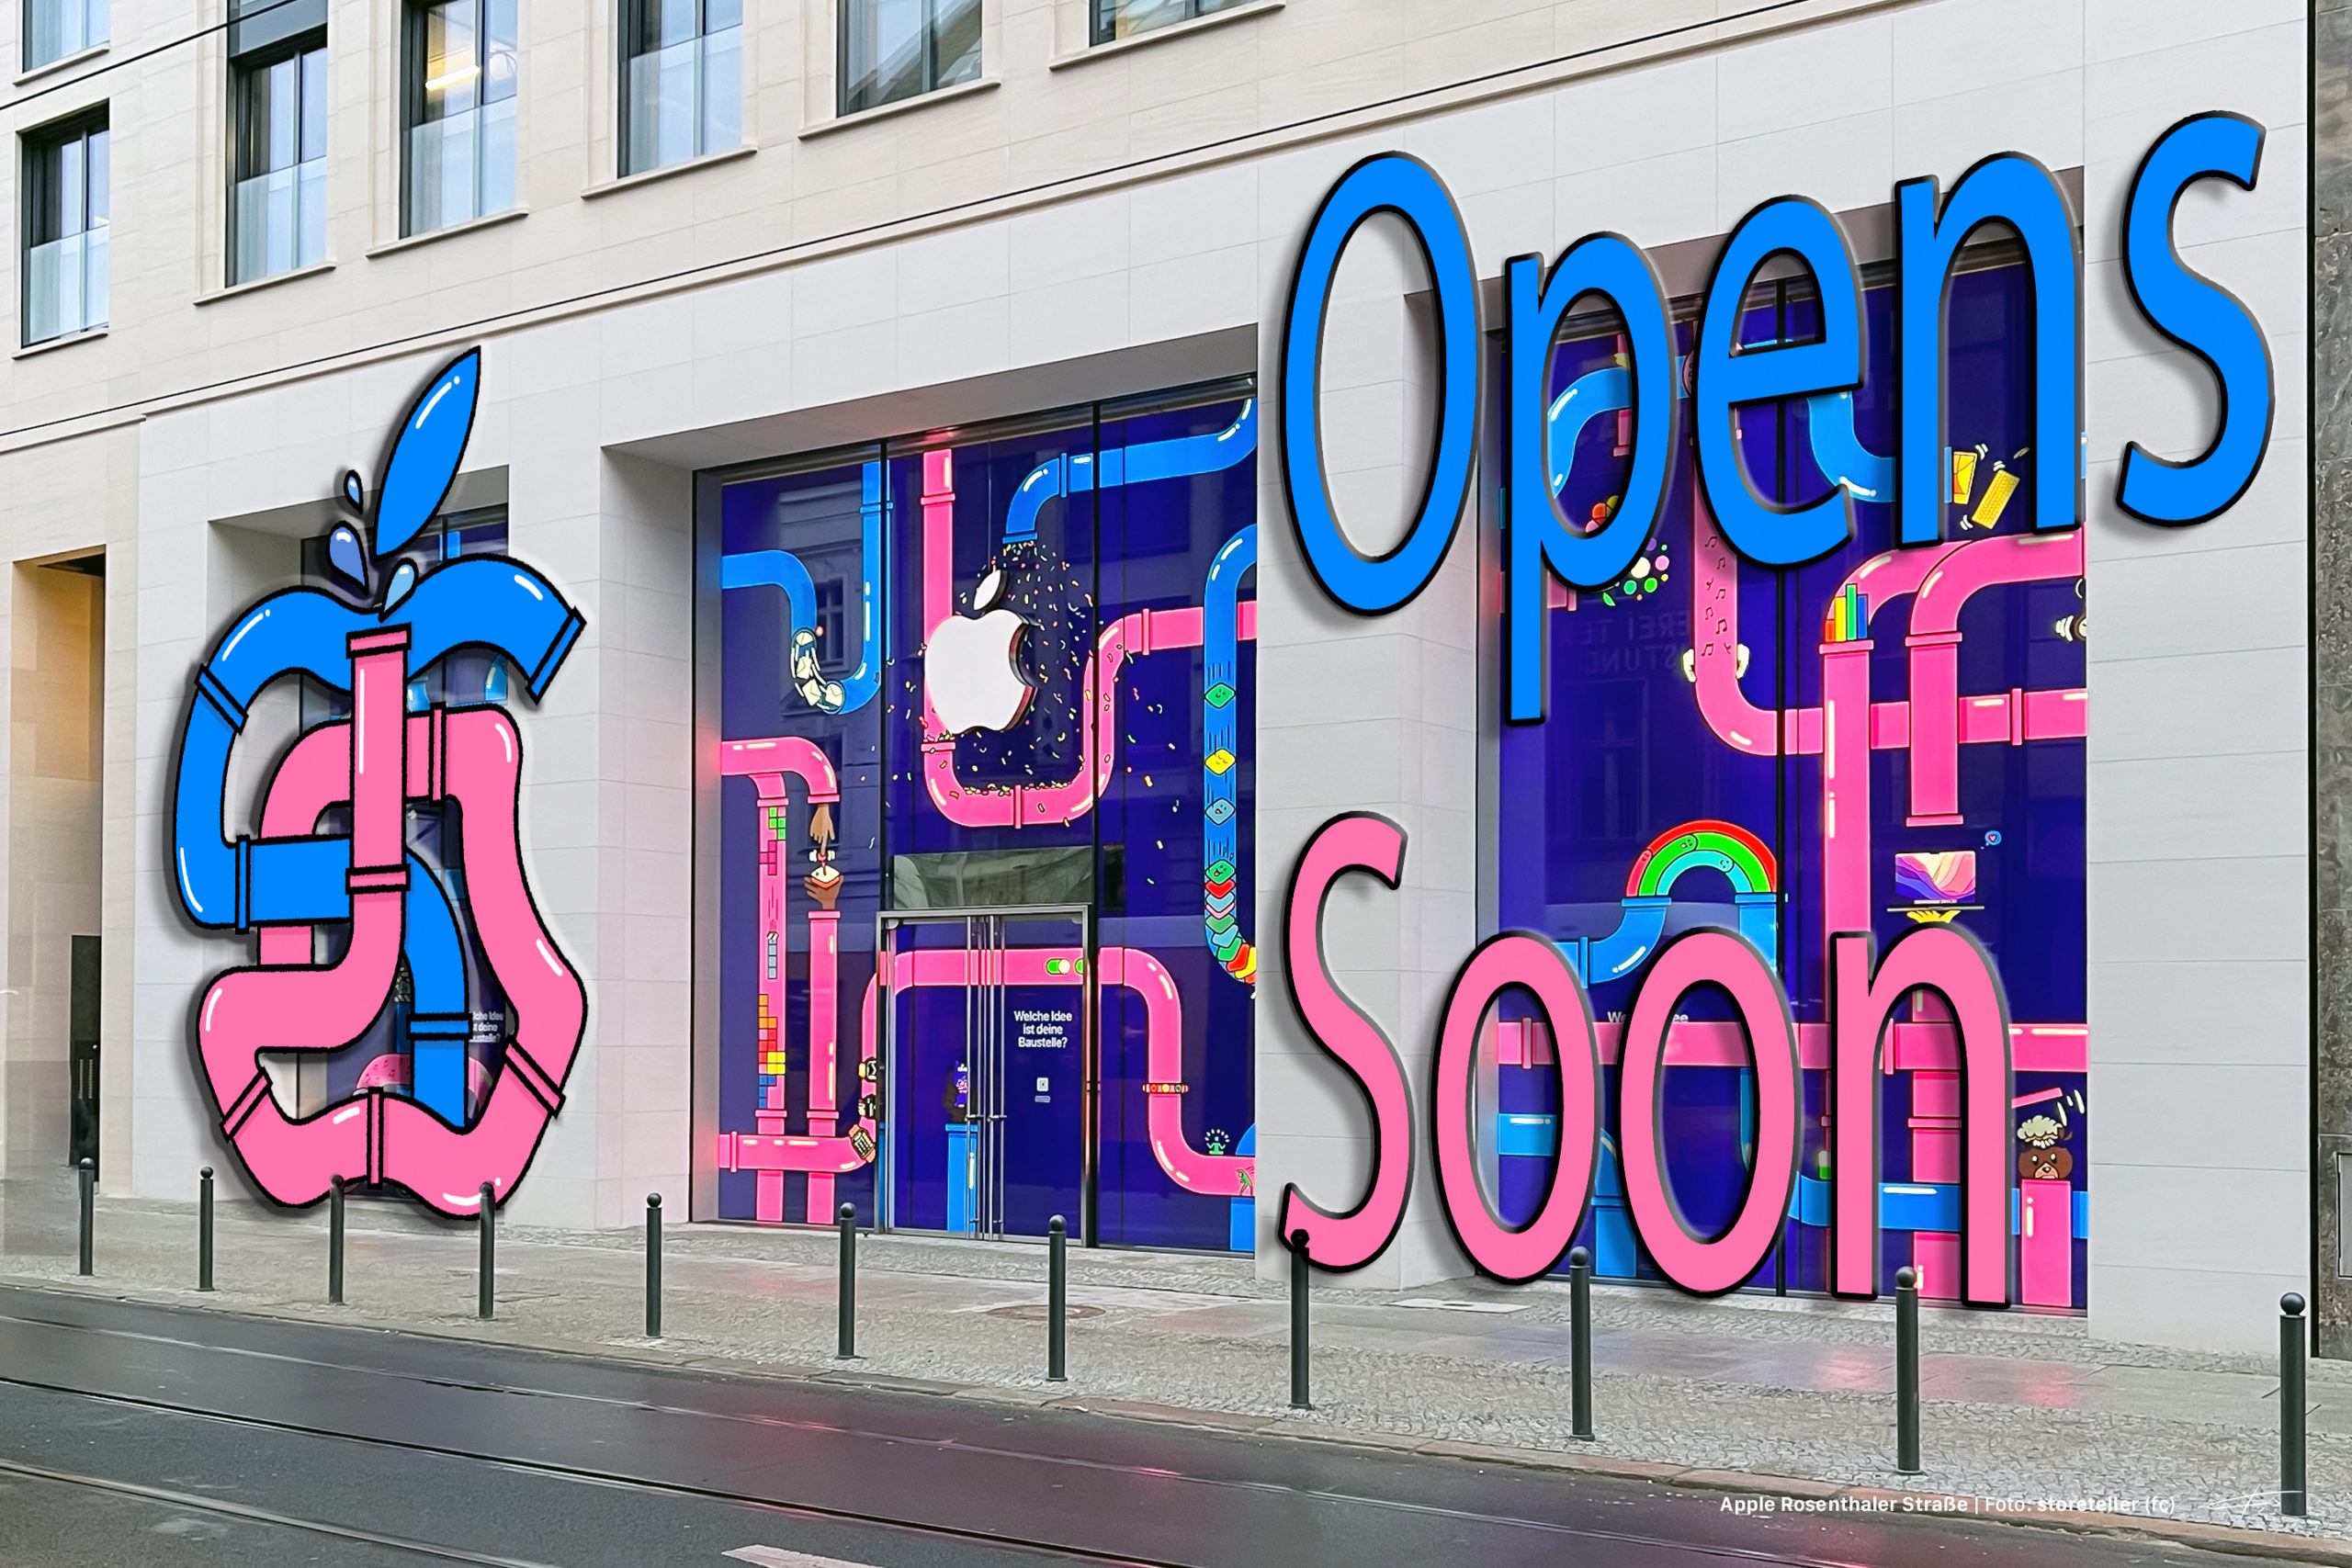 Apple Rosenthaler Straße opens Thursday, December 2, in Berlin - Apple